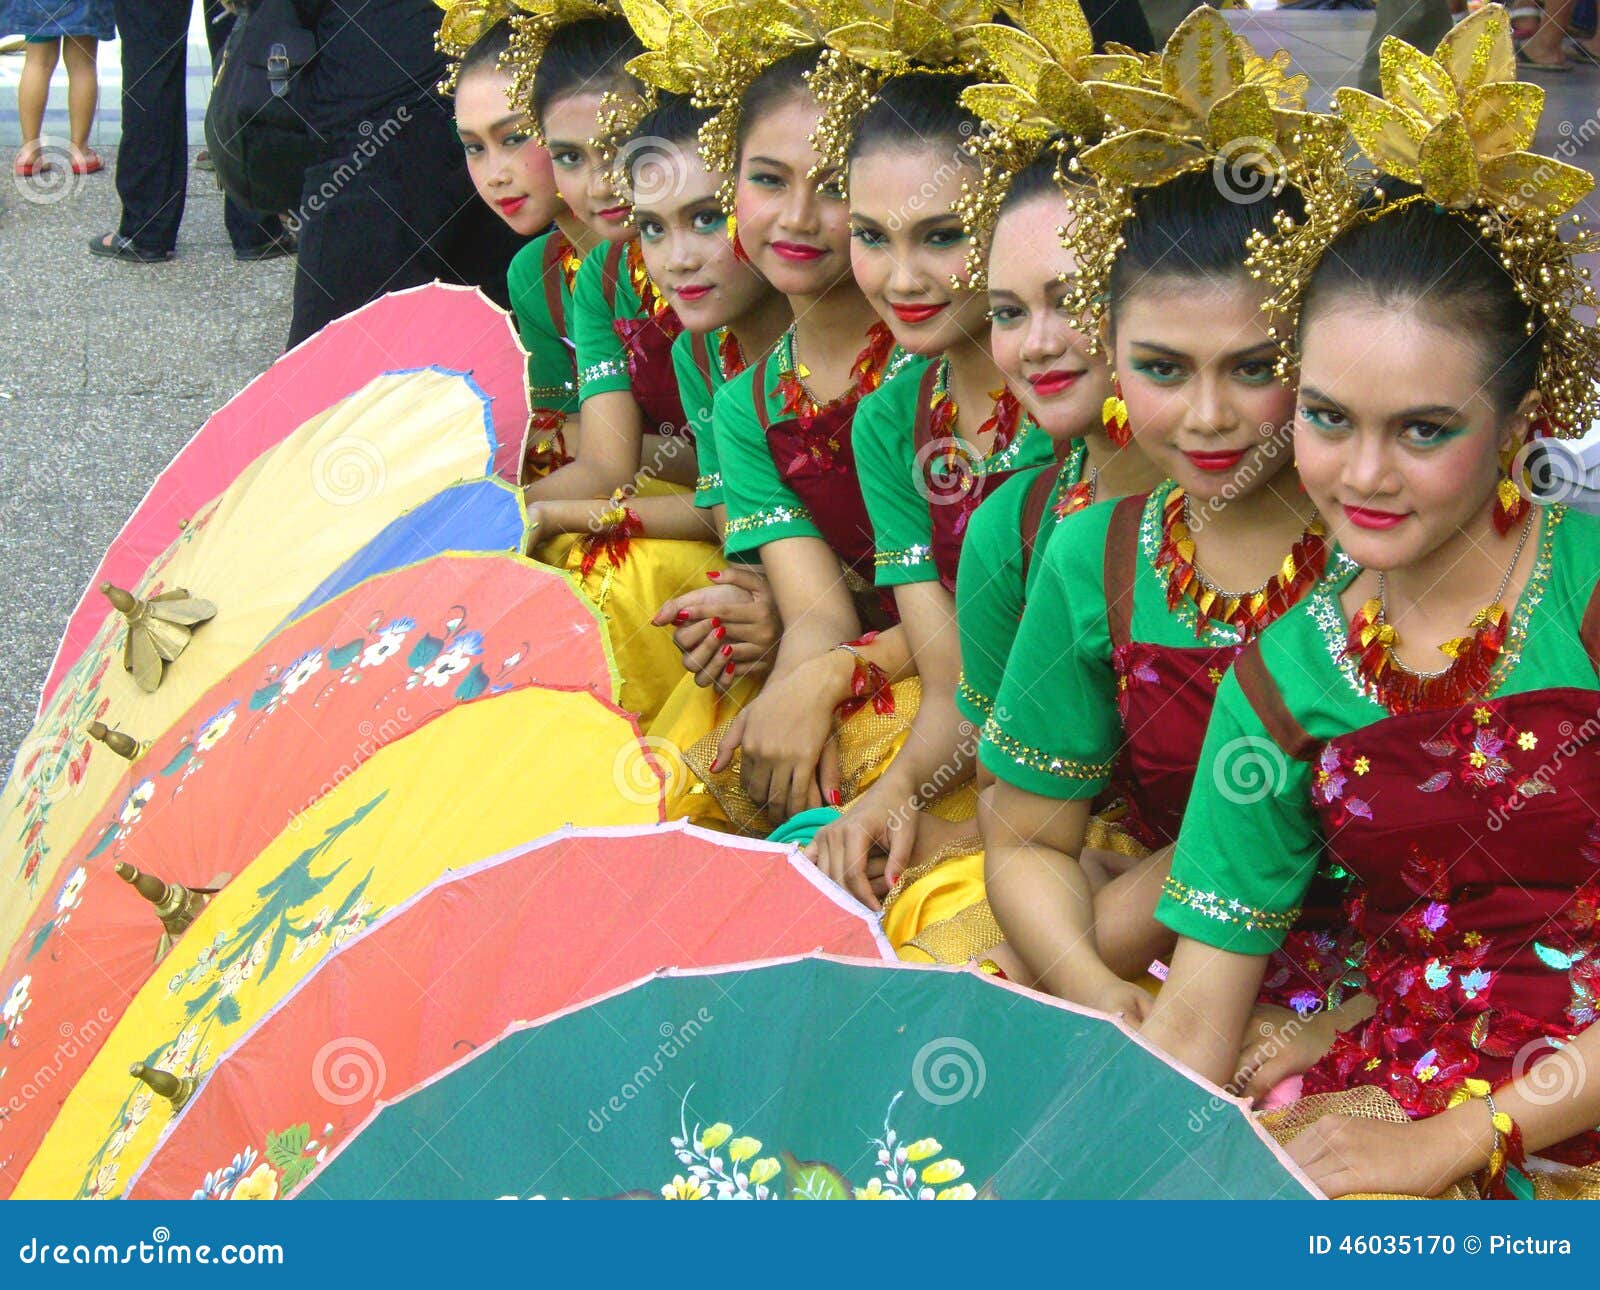 穿印度尼西亚的民族服装的女孩 库存图片. 图片 包括有 礼服, 种族, 巴厘岛, 方式, 设计, 背包 - 134458007